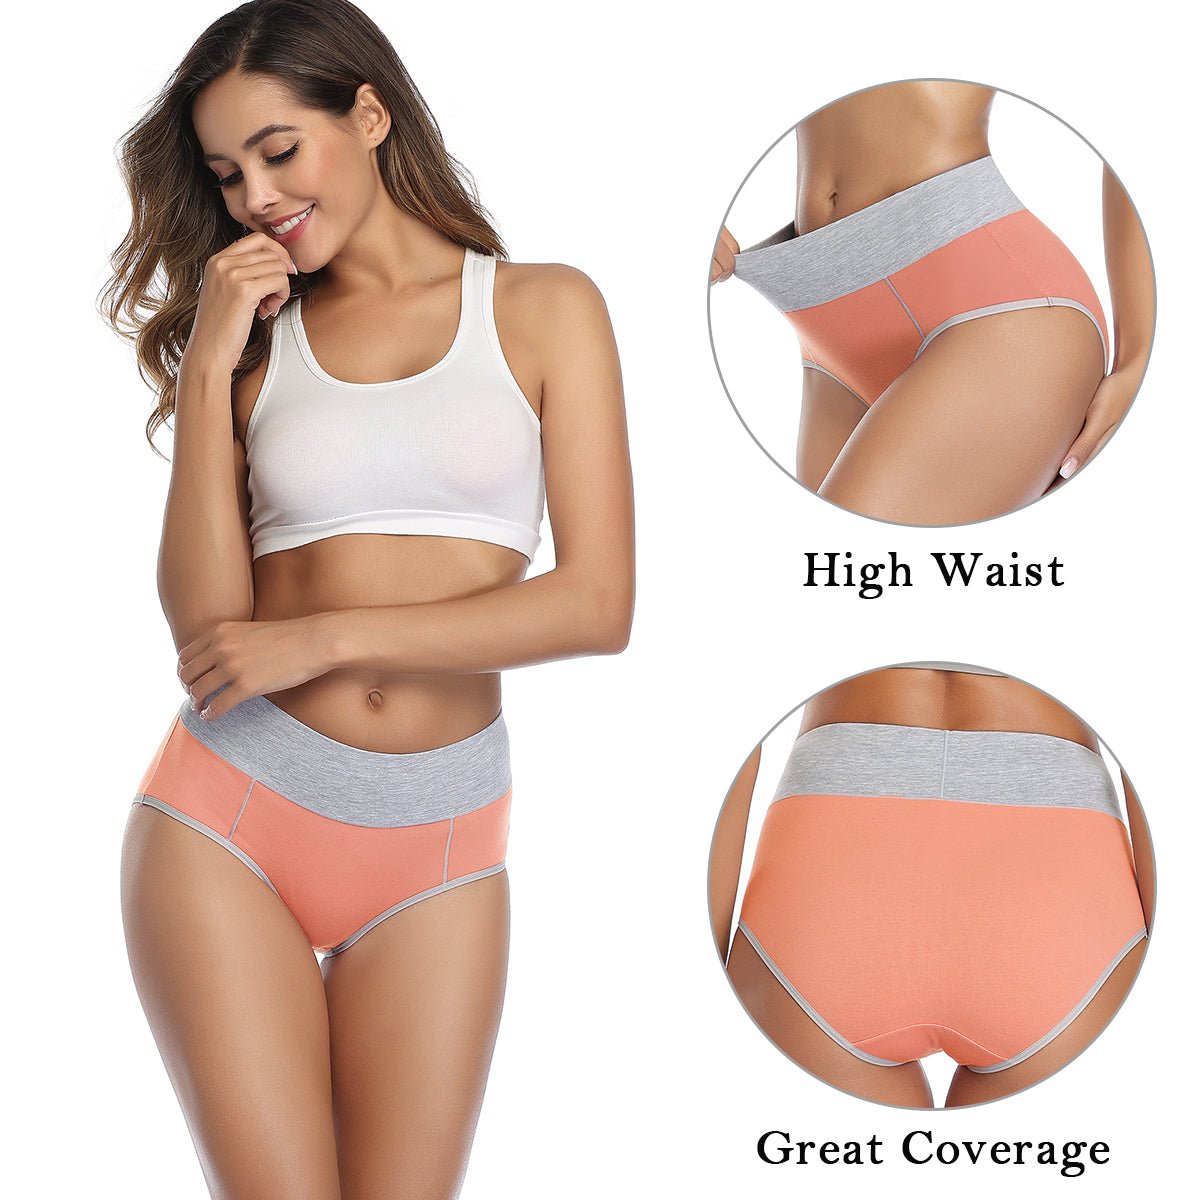 wirarpa Women’s High Waisted Cotton Briefs Underwear 5 Pack - Wirarpa Apparel, Inc.